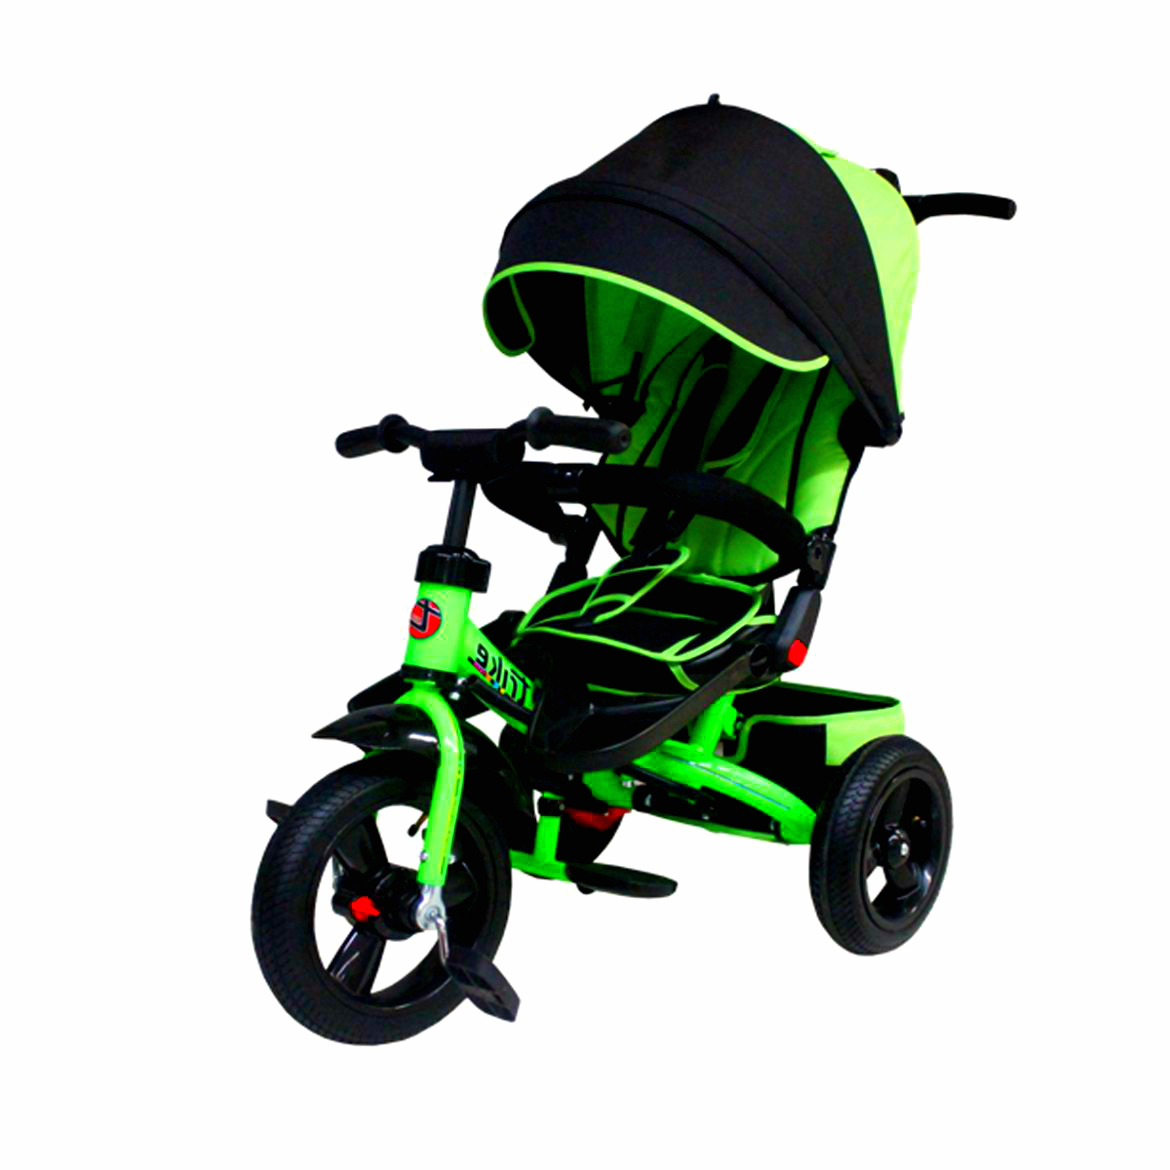 Велосипед детский трехколесный с ручкой купить авито. Велосипед Trike ta5. X3 Air велосипед трёхколёсный. Велосипед трехколесный Lexus Trike салатовый/черный. Велосипед трёхколёсный детский x3 Air.